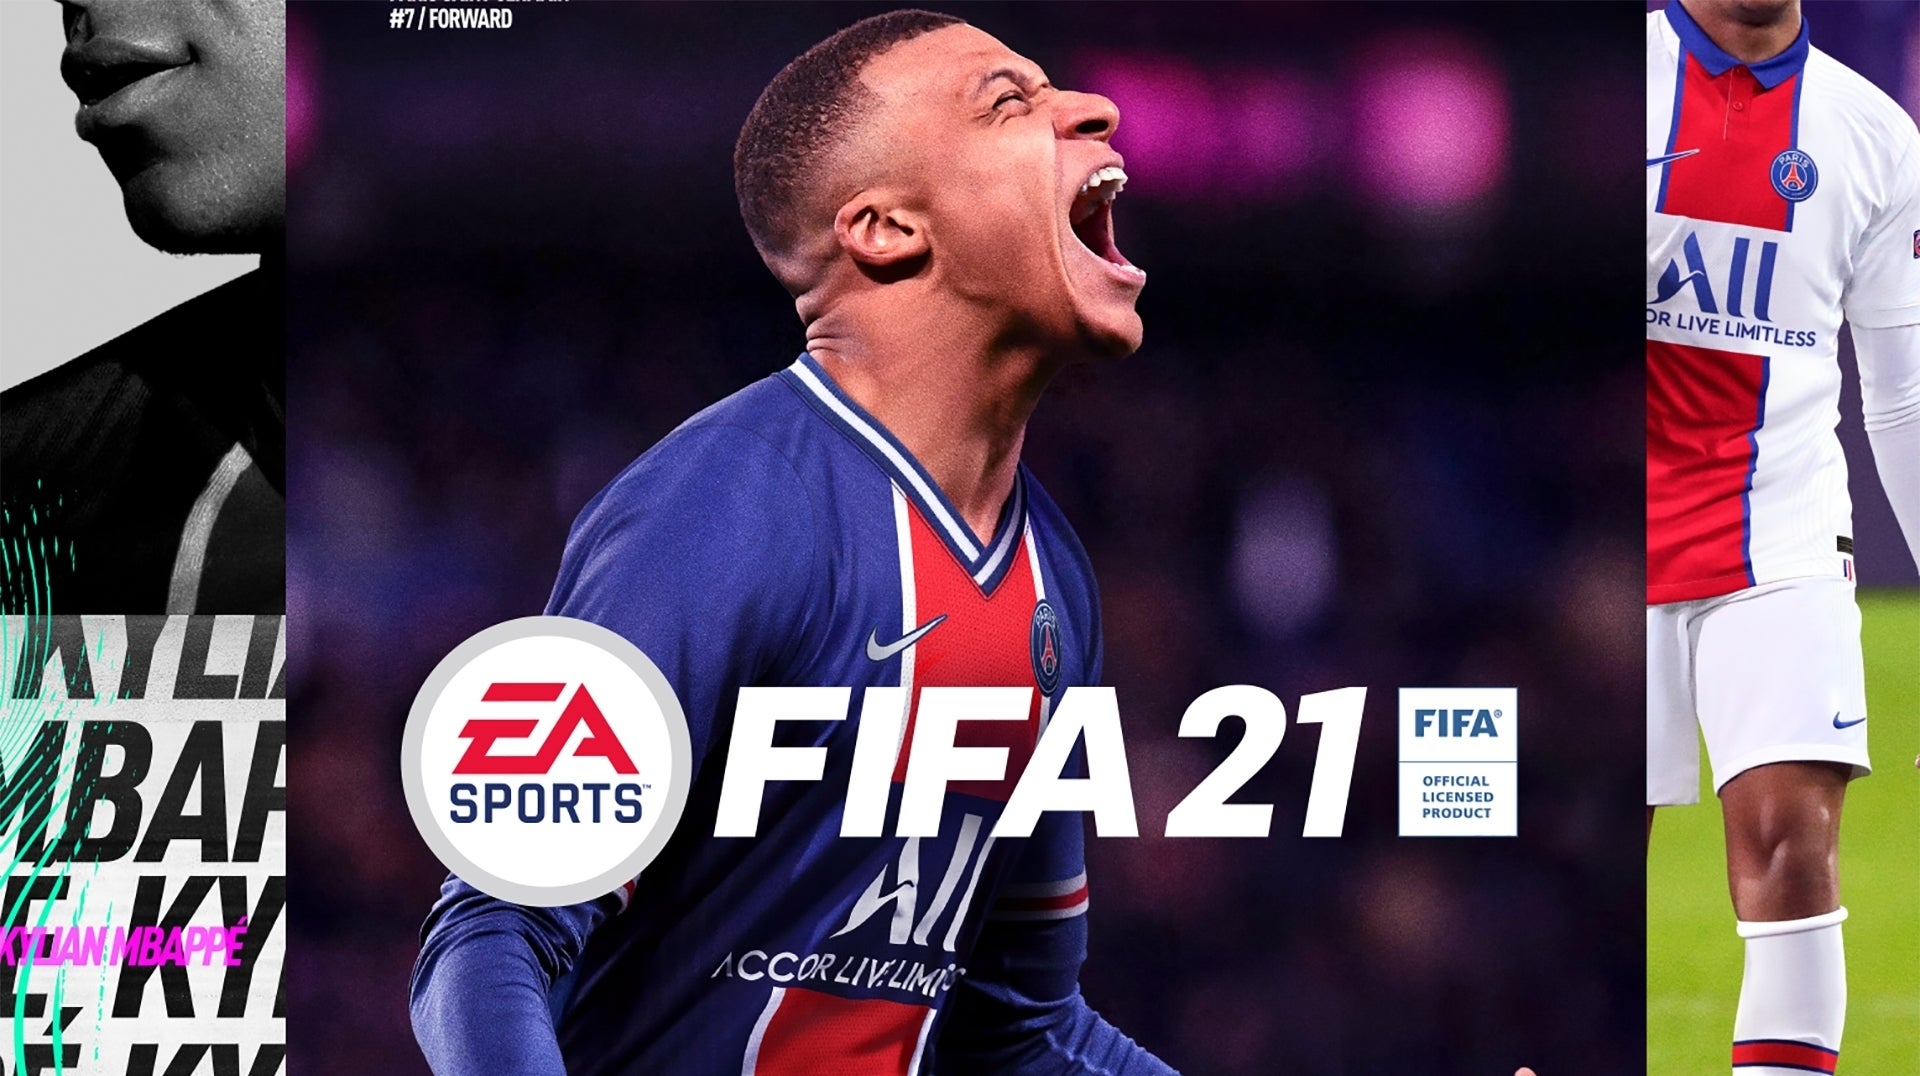 Imagen para Ventas UK: FIFA 21 fue el juego más vendido de 2020 con 2,2 millones de copias